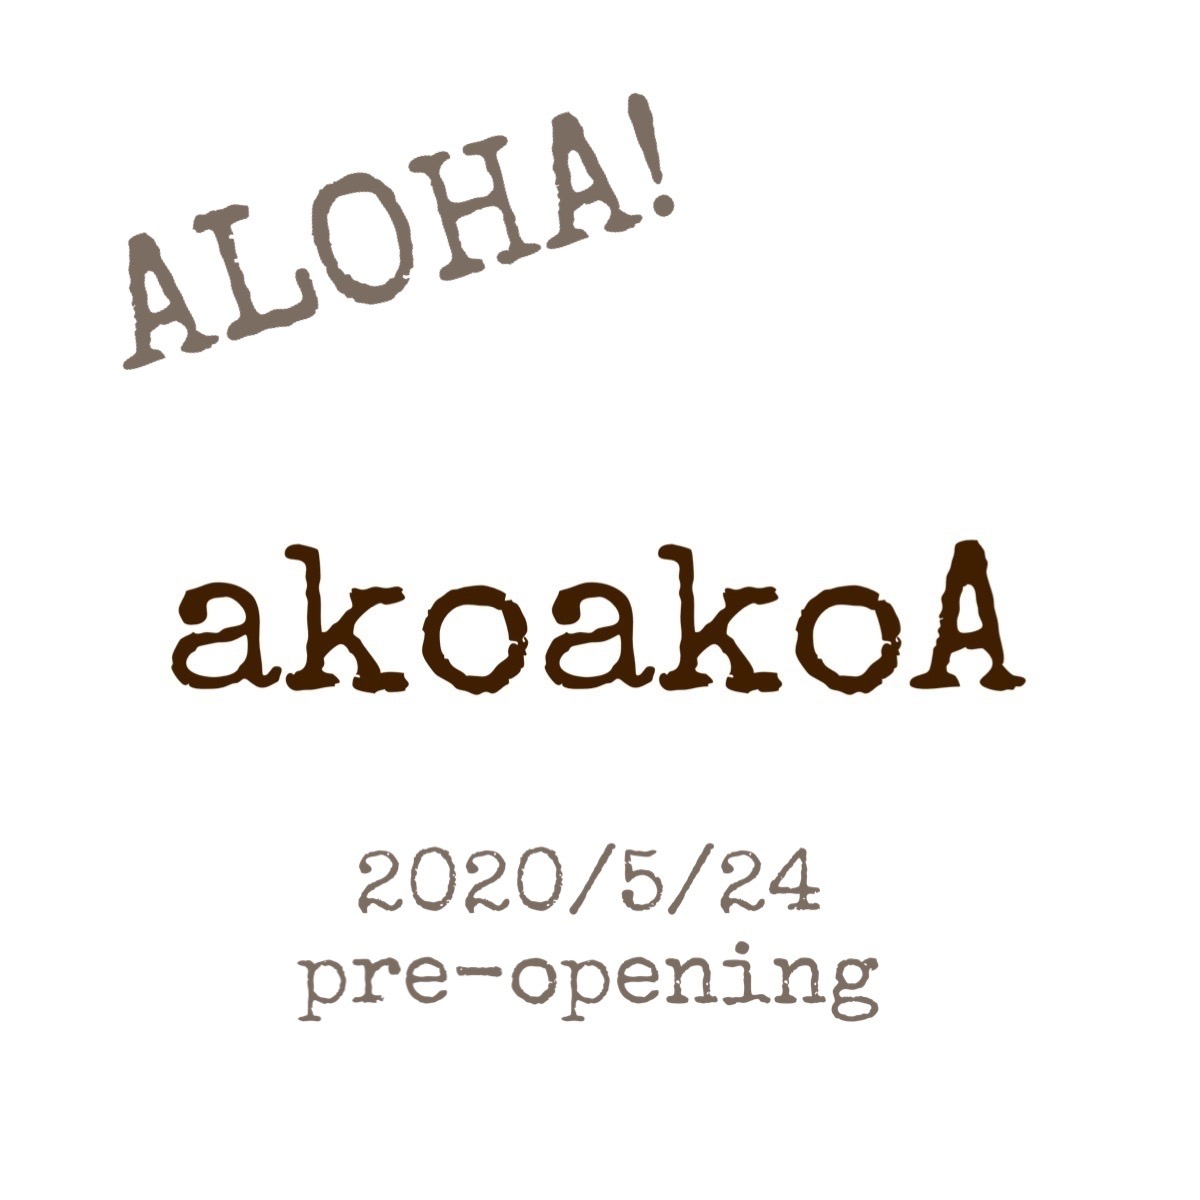  【 akoakoA 】2020/5/24 open